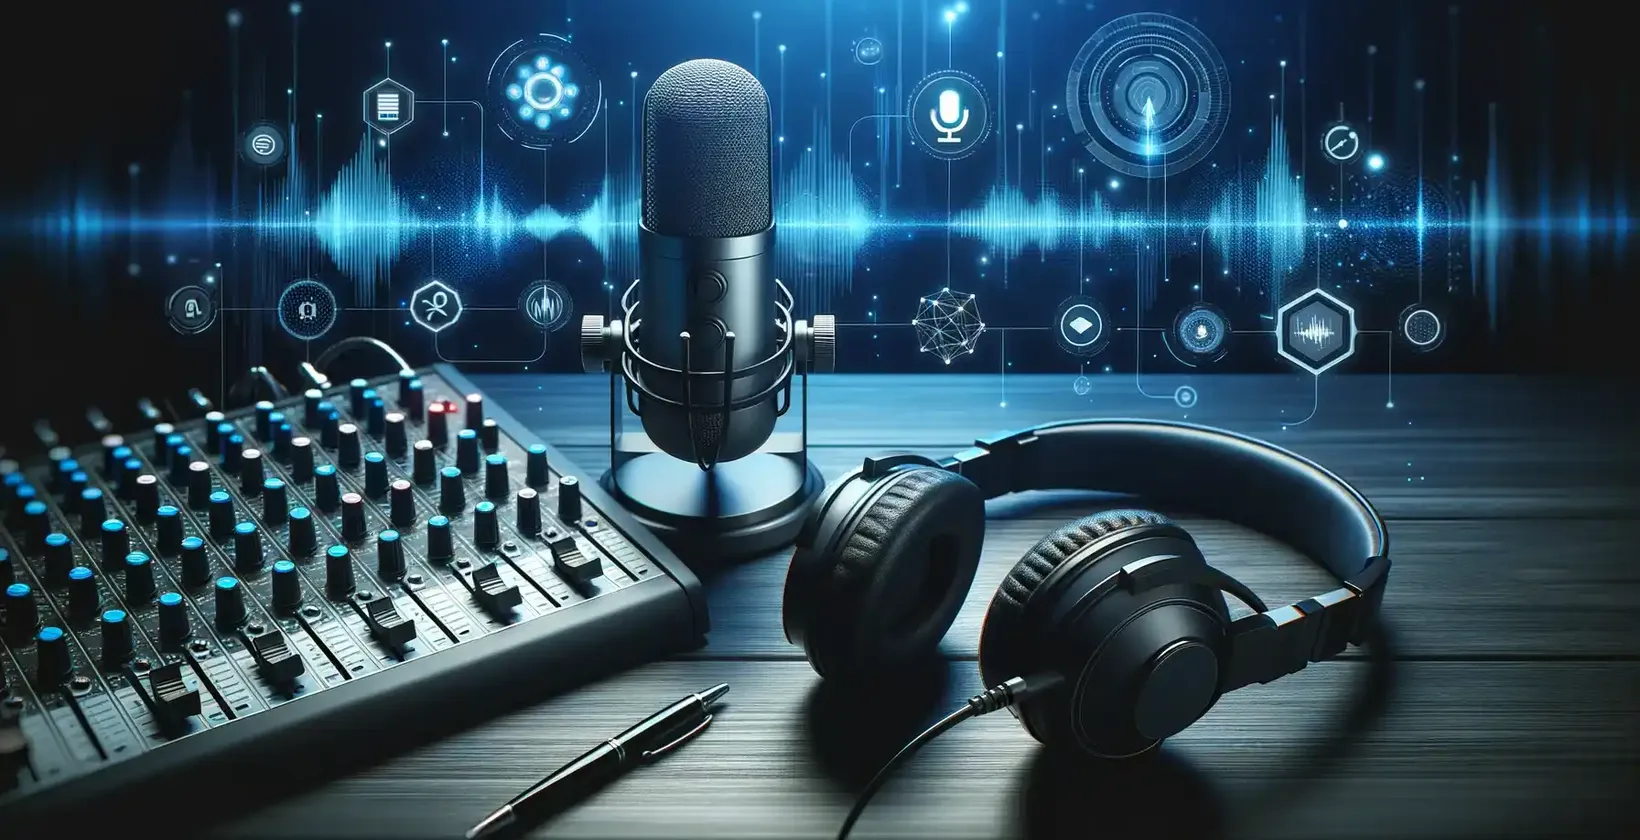 Der Zugang zu den Podcasts erfolgt über eine Studioausrüstung mit Mikrofon, Kopfhörer und einem Bildschirm, auf dem die Audiowellenformen angezeigt werden.